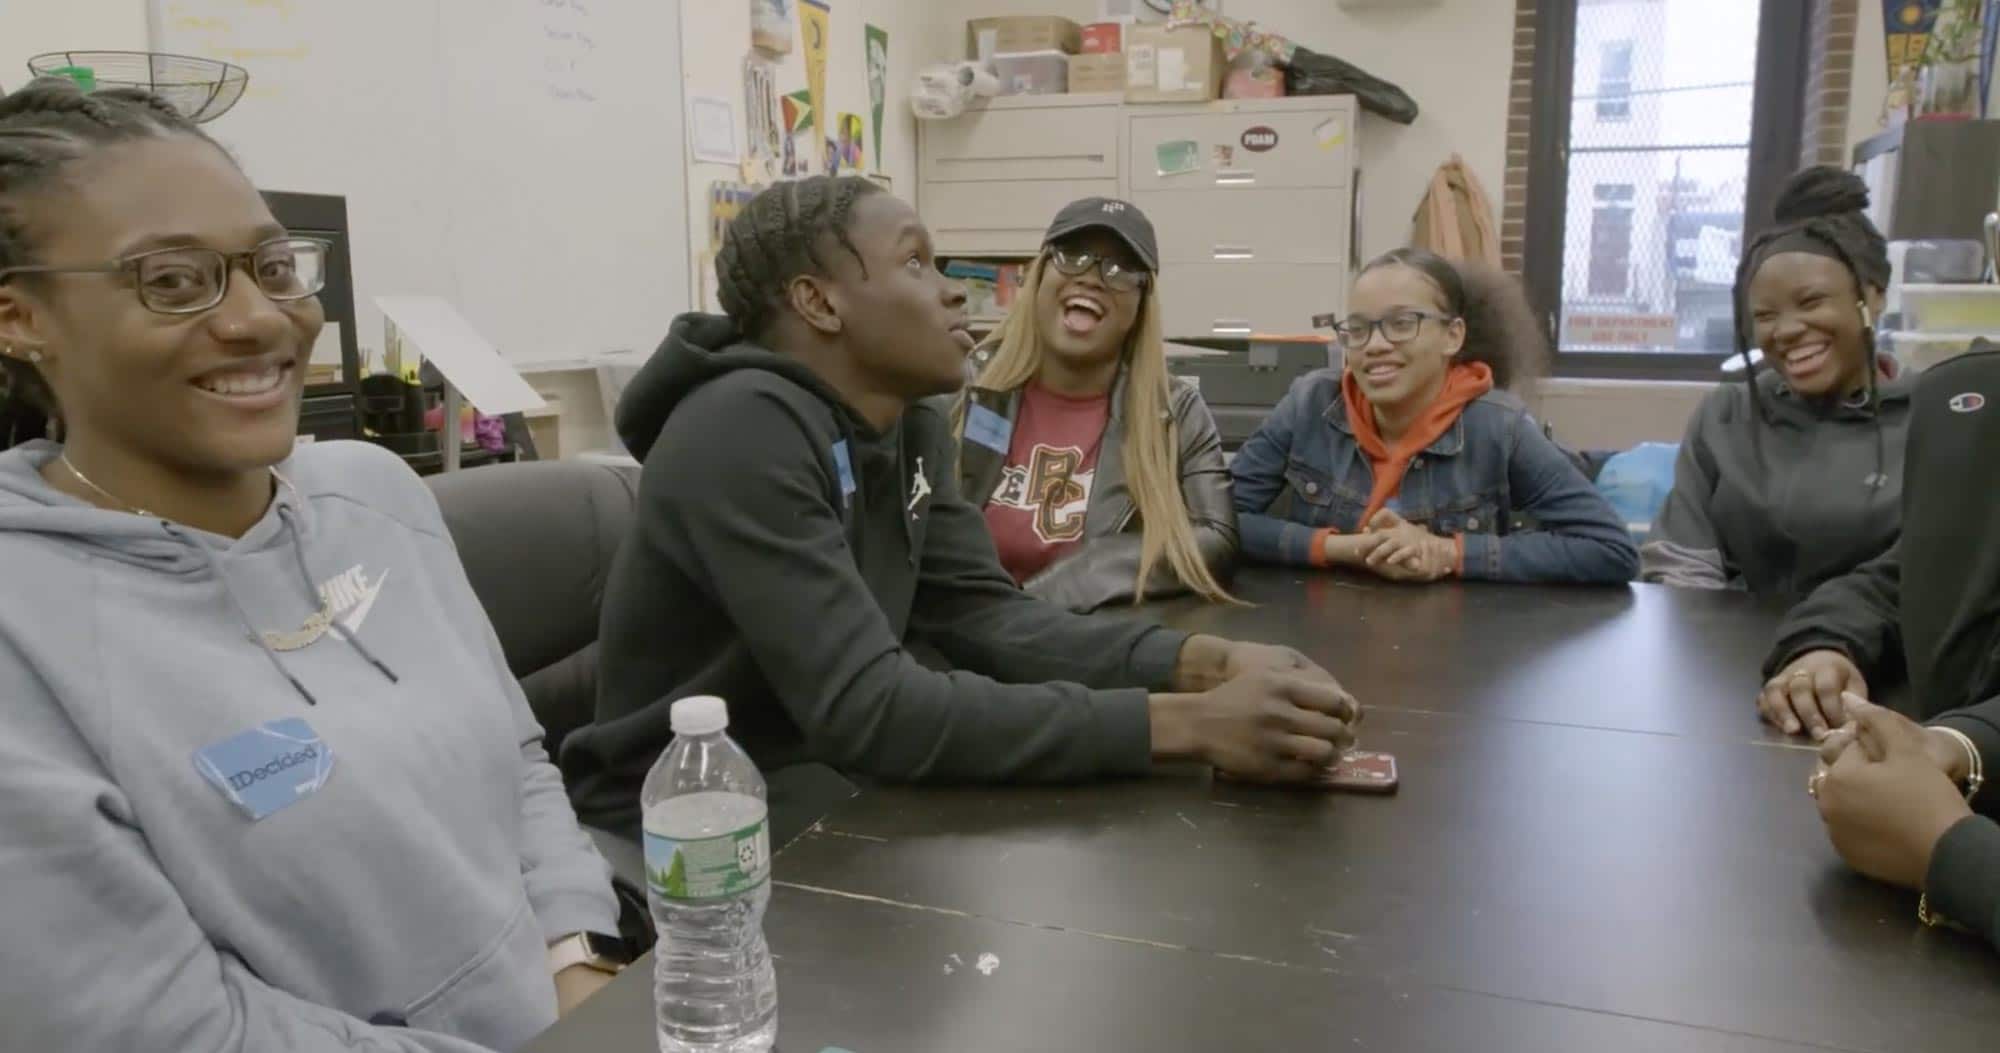 Counseling In Schools Helping New York City students, grupo de estudiantes en una mesa riendo